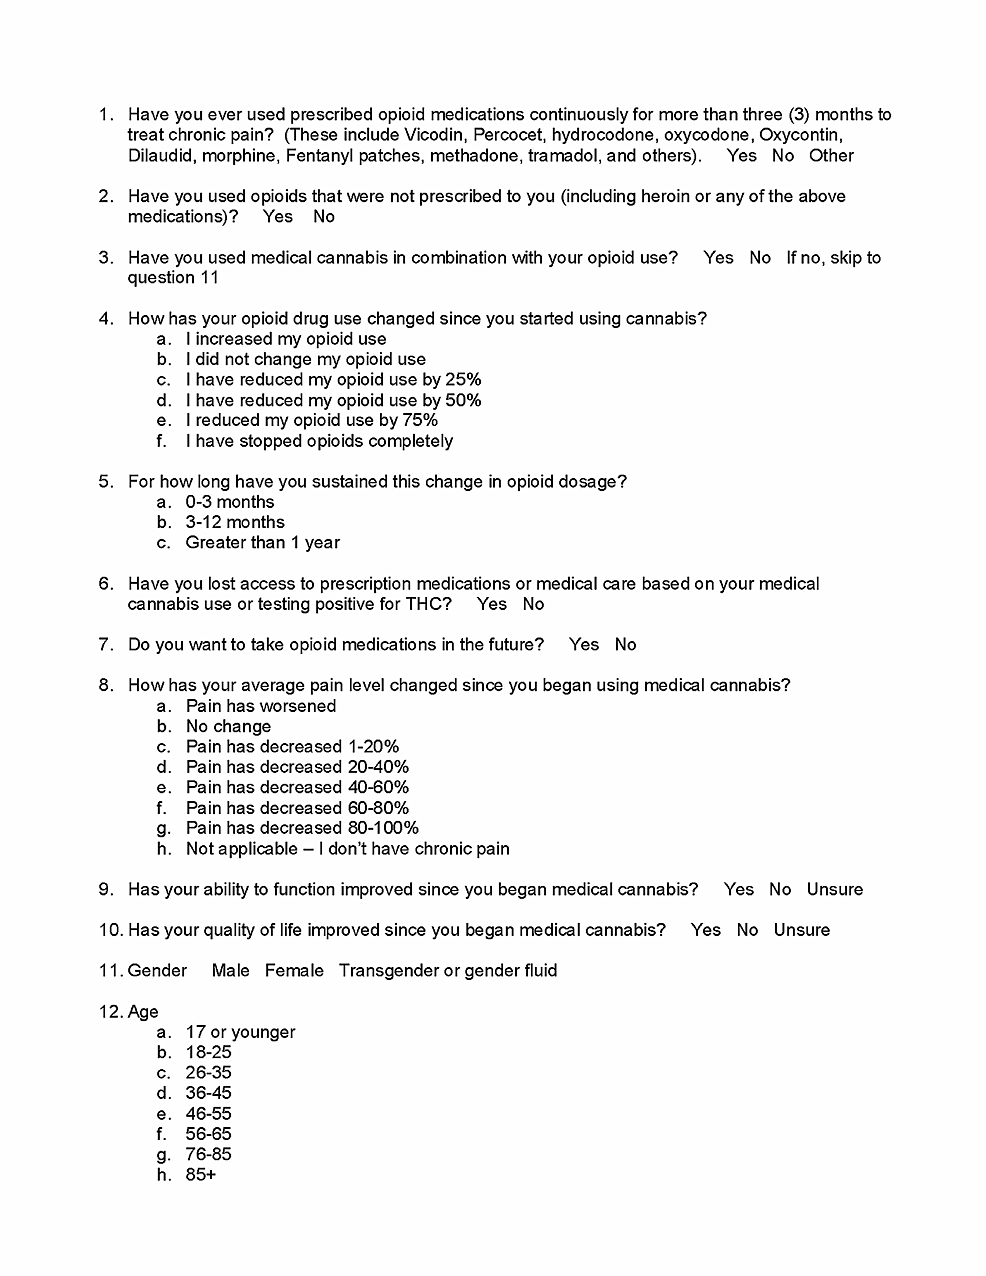 Survey-questionnaire